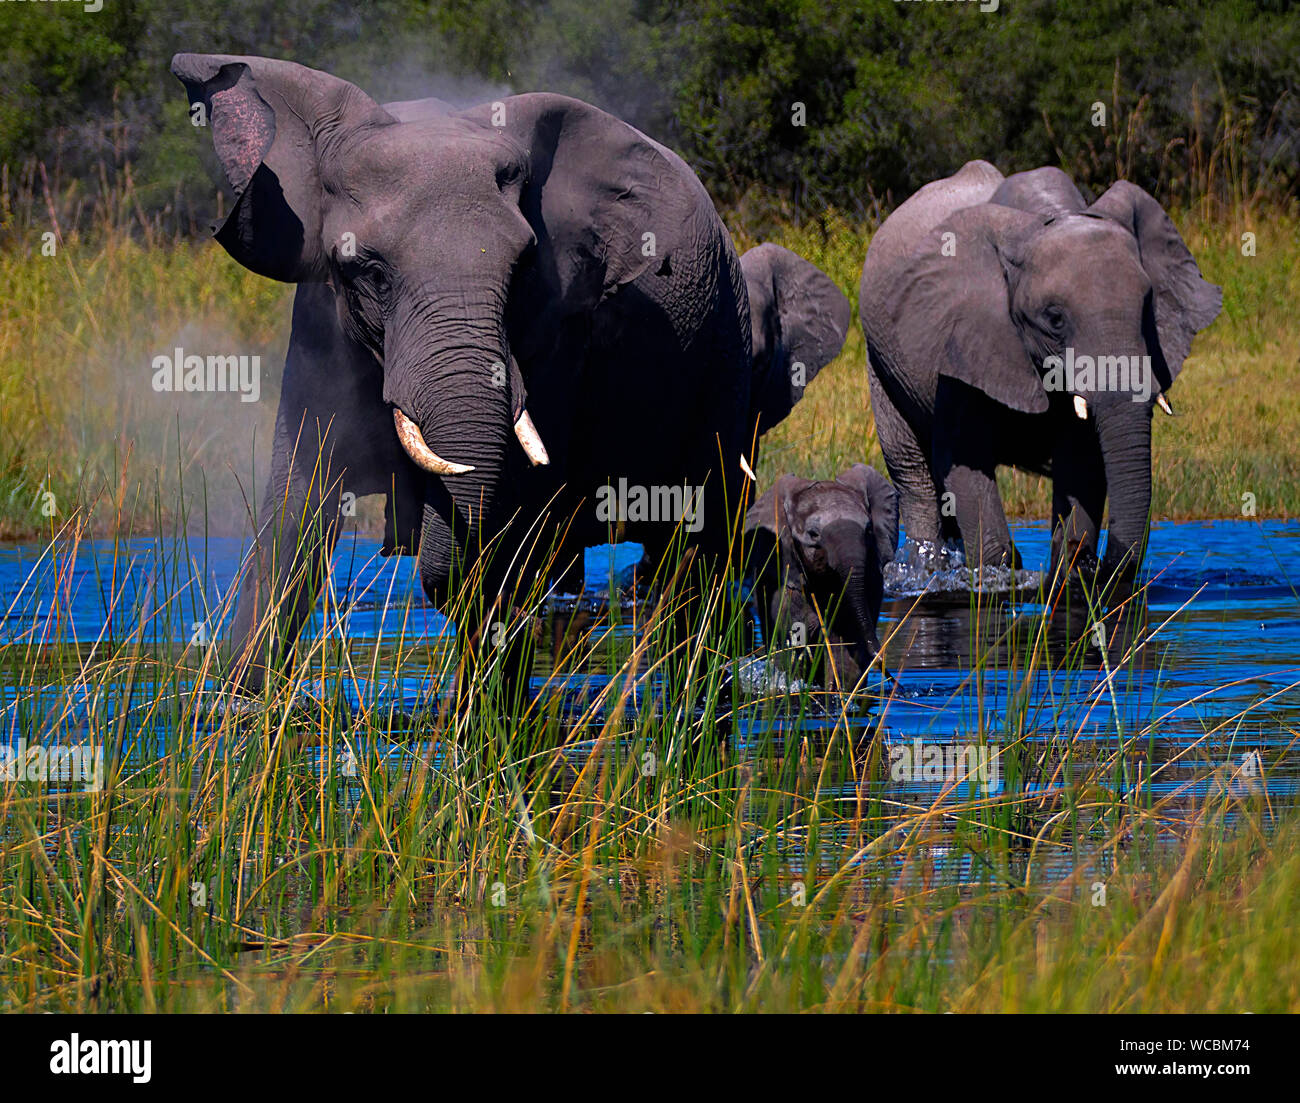 Elefanten sind Pflanzenfresser und leben in Gruppen. Sie haben graue Haut, in der Größe von den Ohren und die Stosszähne unterscheiden. Stockfoto